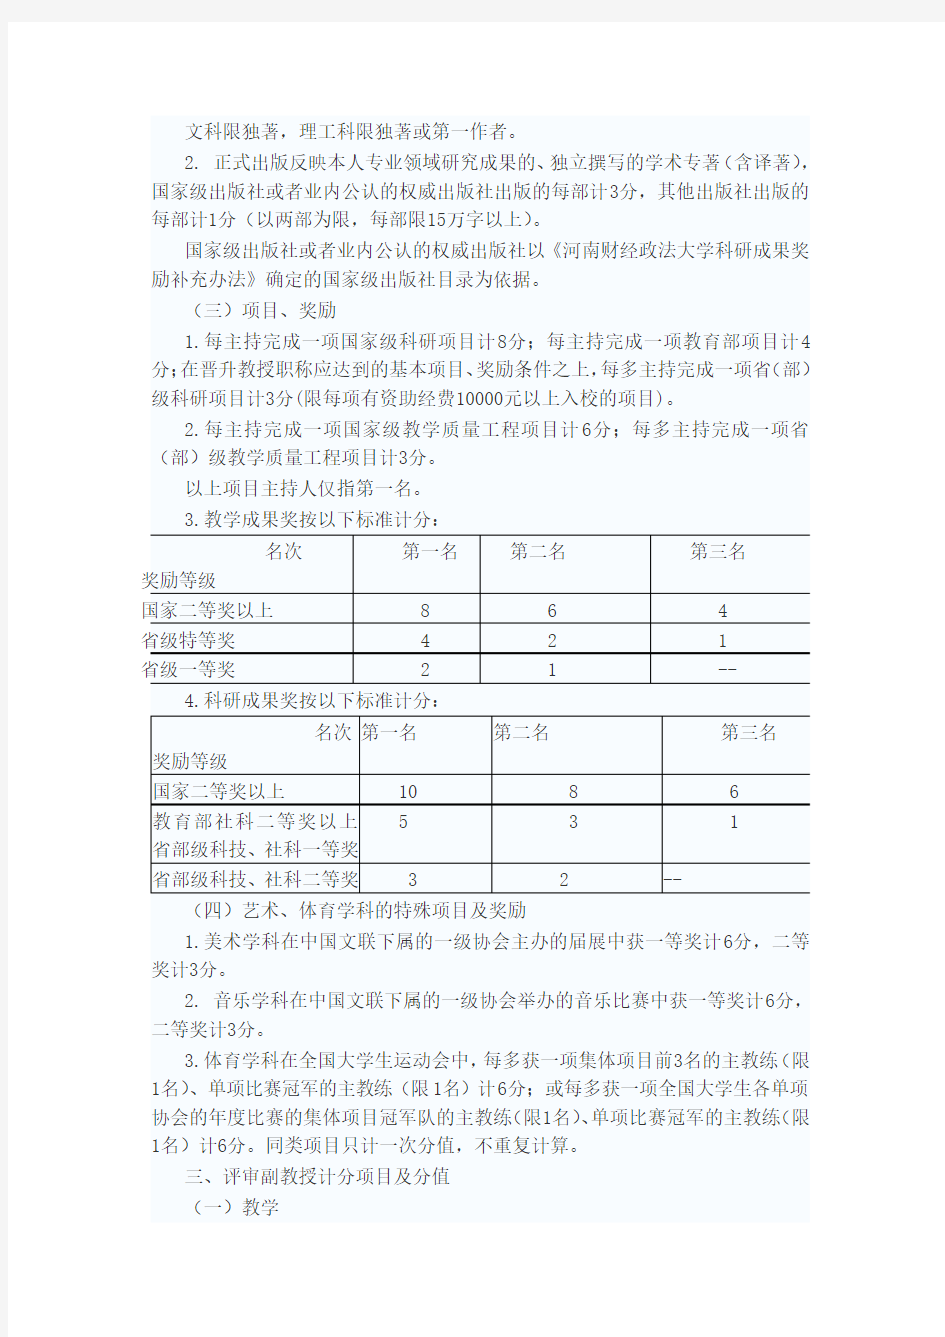 河南财经政法大学 教师系列职称评审业绩条件量化计分暂行办法